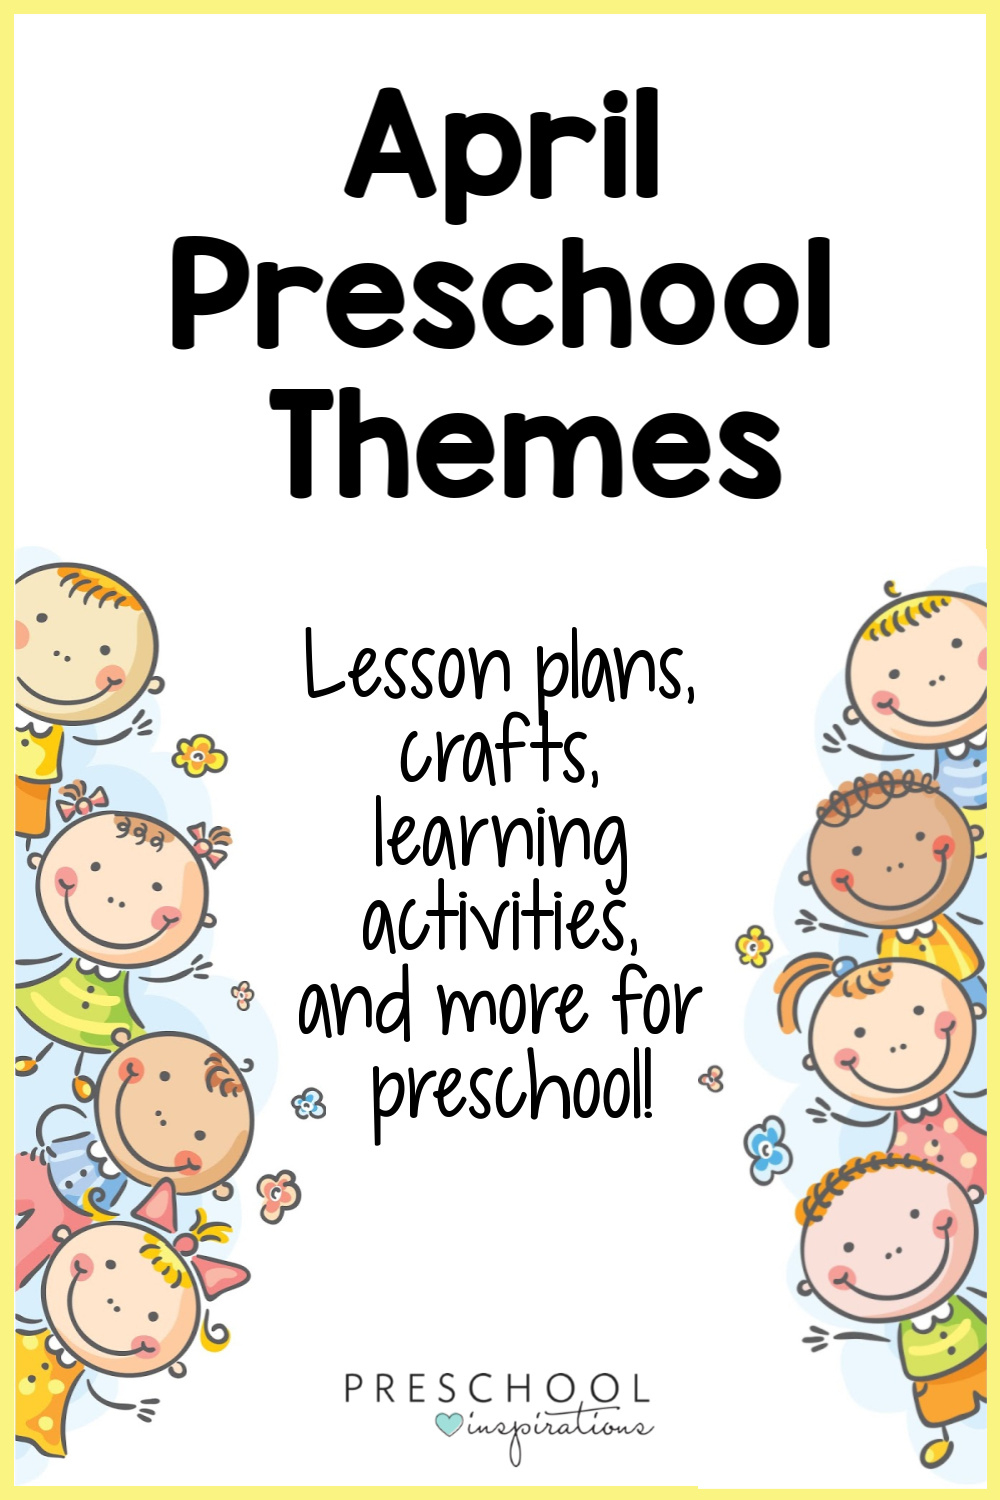 April Preschool Themes - Preschool Inspirations